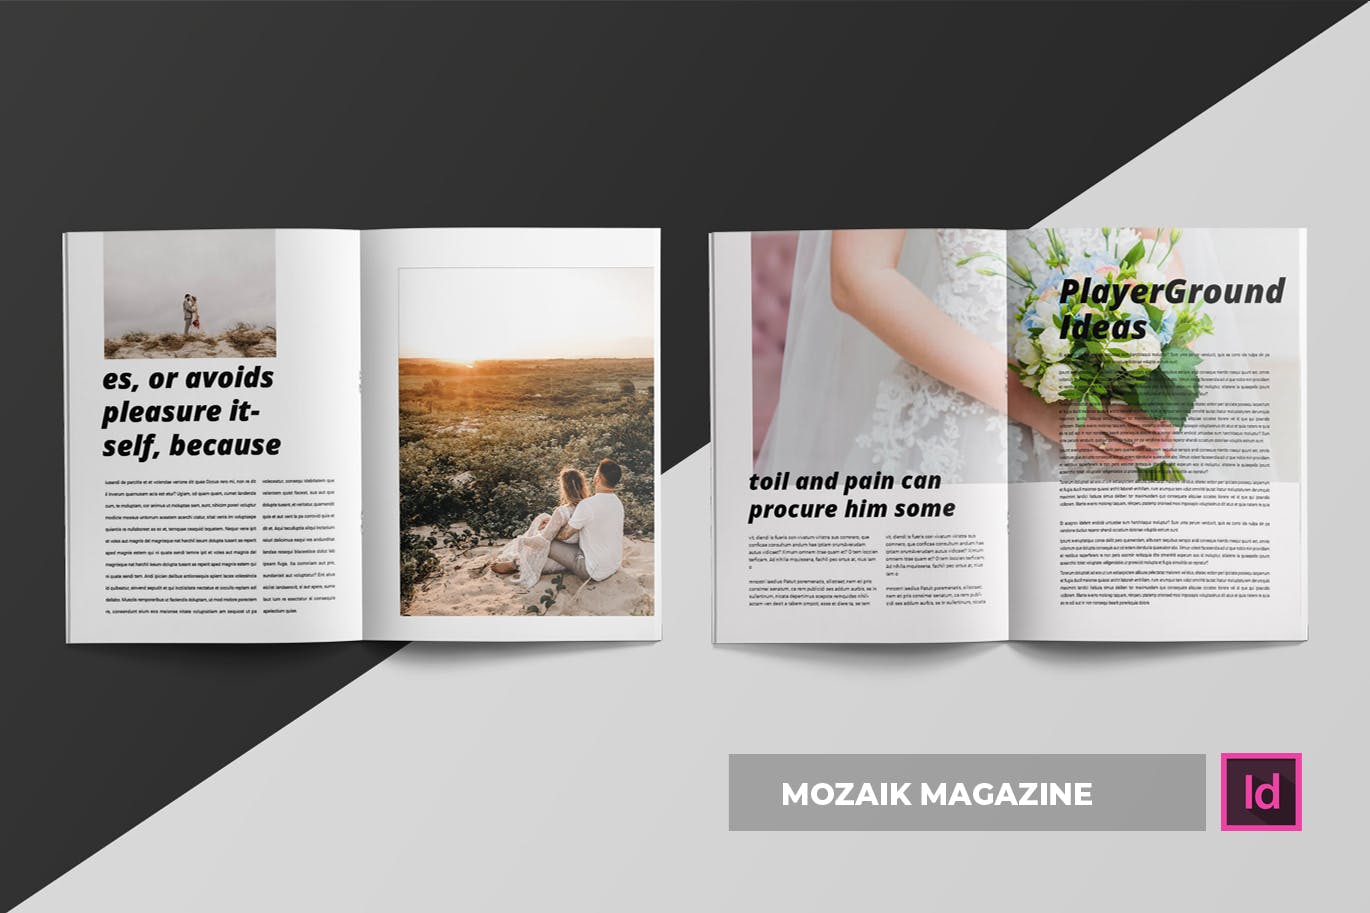 时尚生活主题第一素材精选杂志排版设计INDD模板 Mozaik | Magazine Template插图(2)